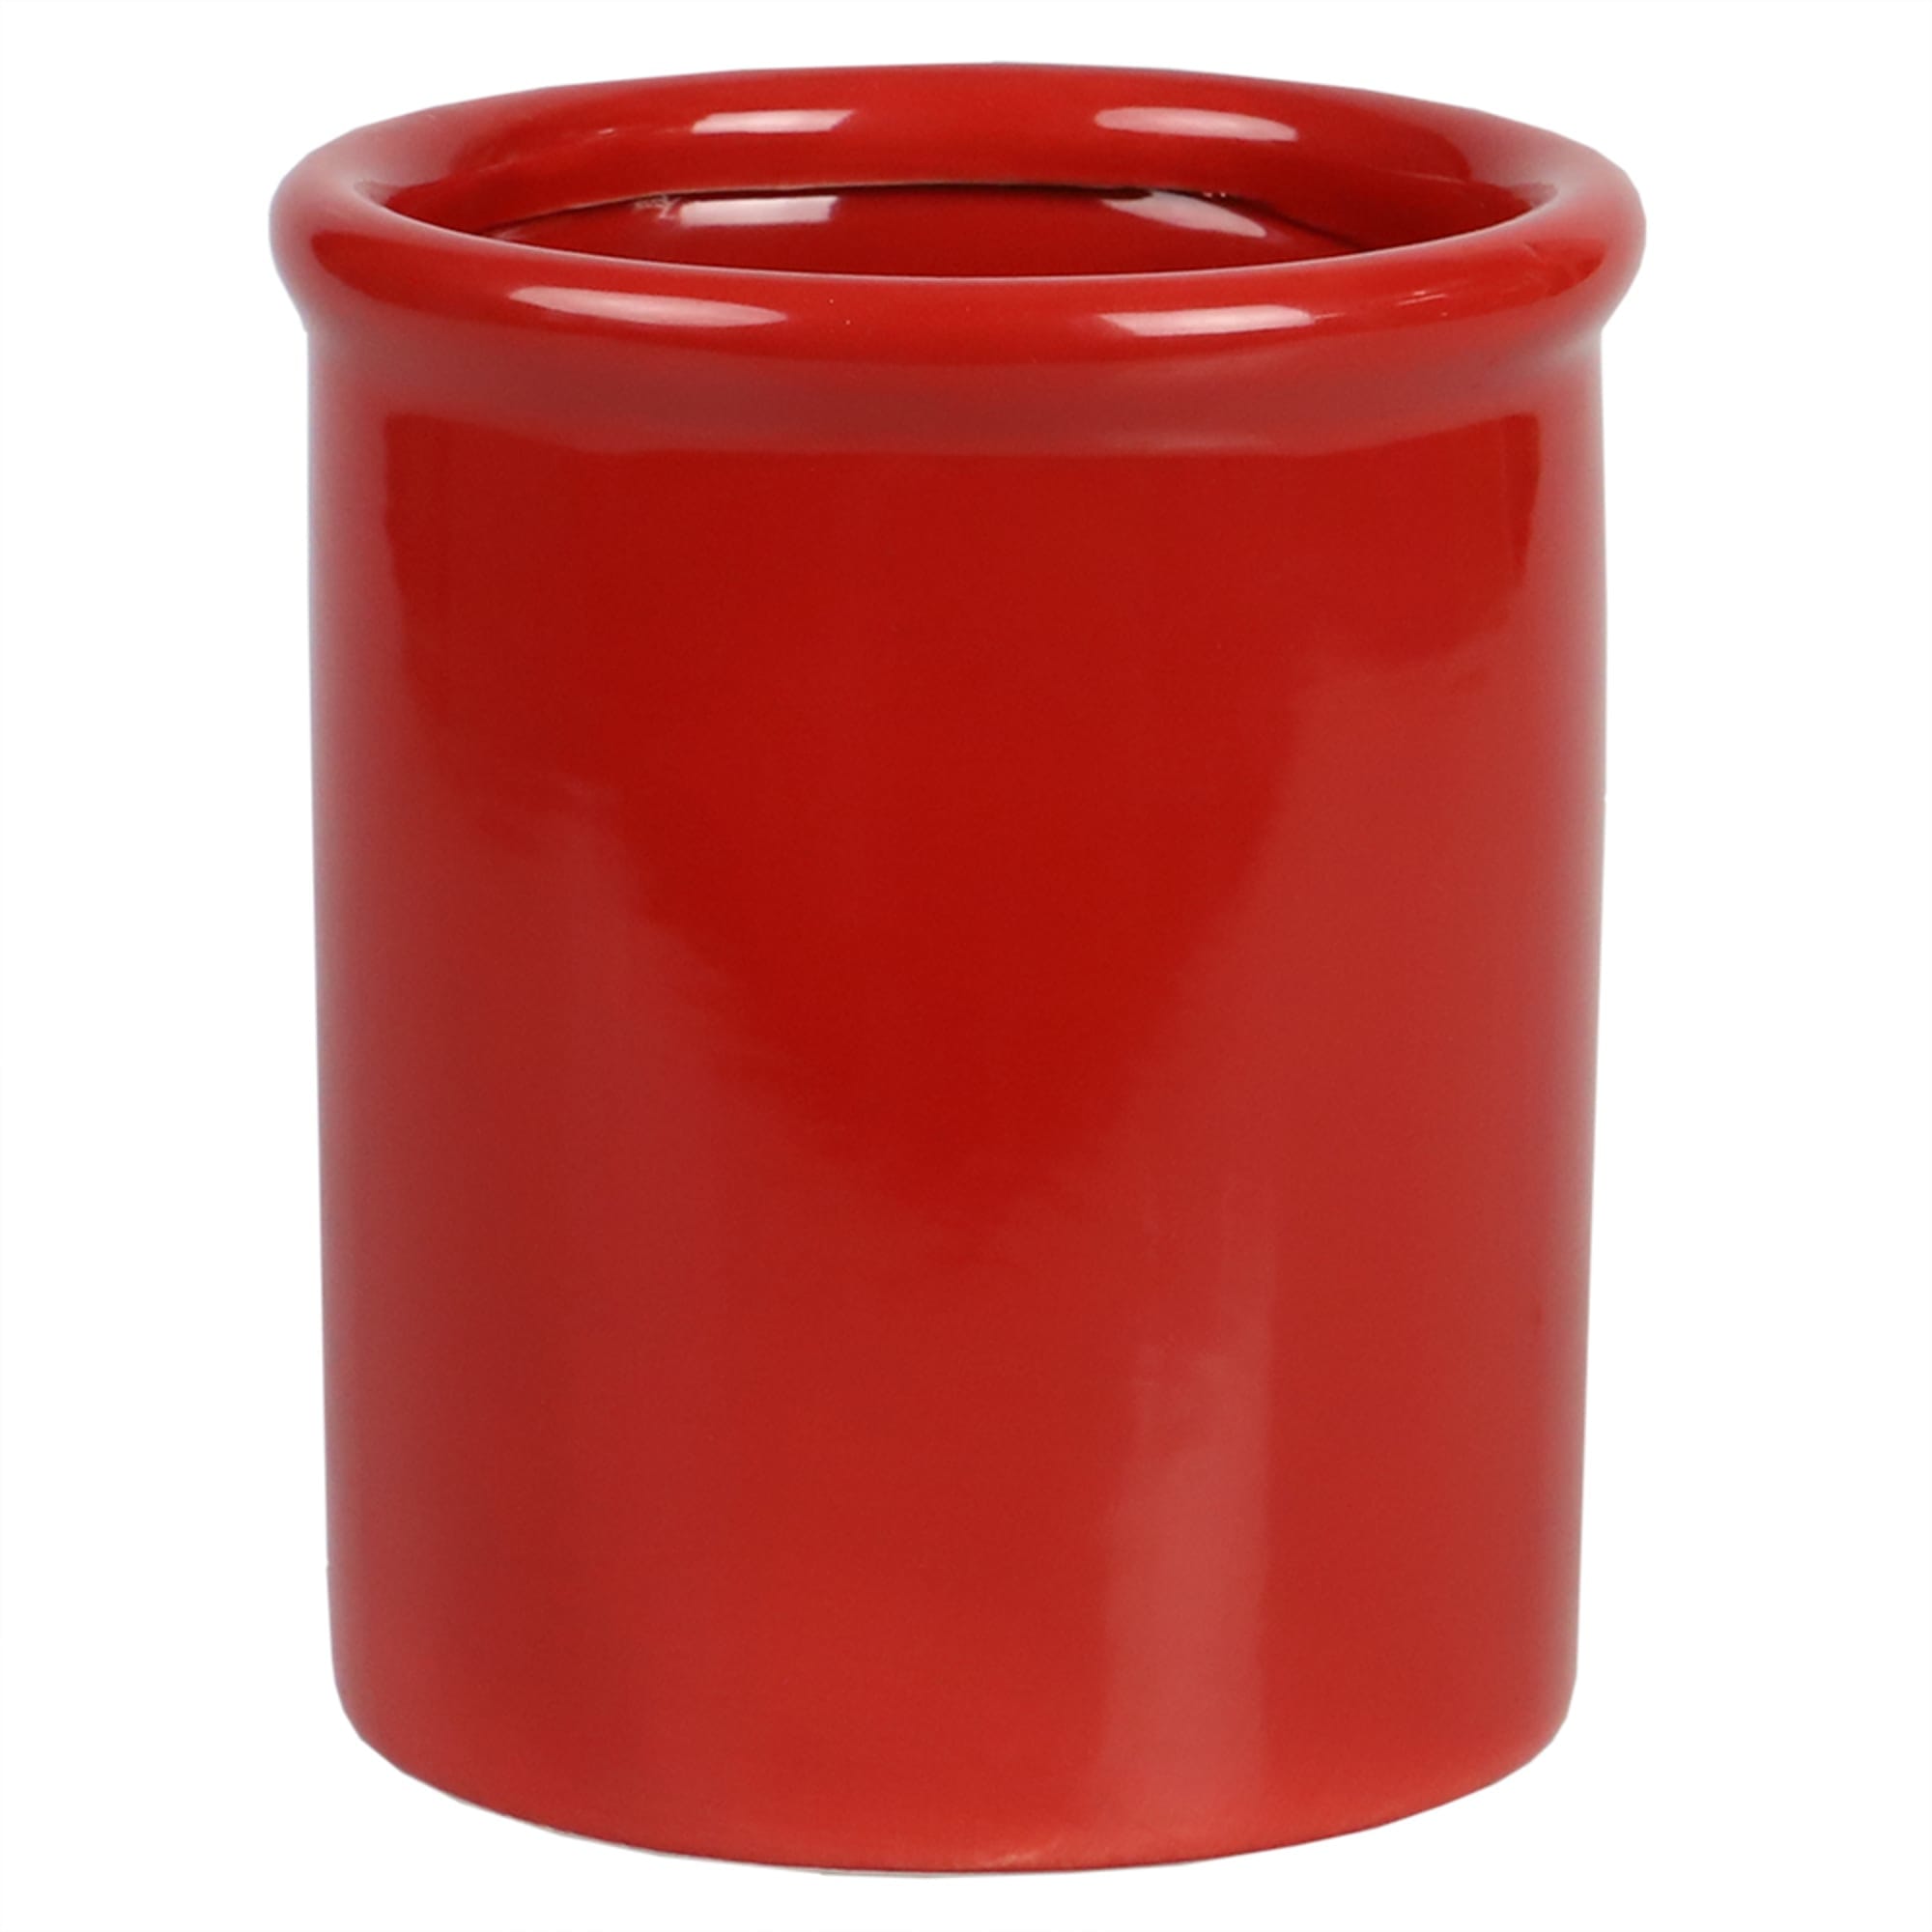 Home Basics Glazed Ceramic Utensil Crock, Red $6.00 EACH, CASE PACK OF 6